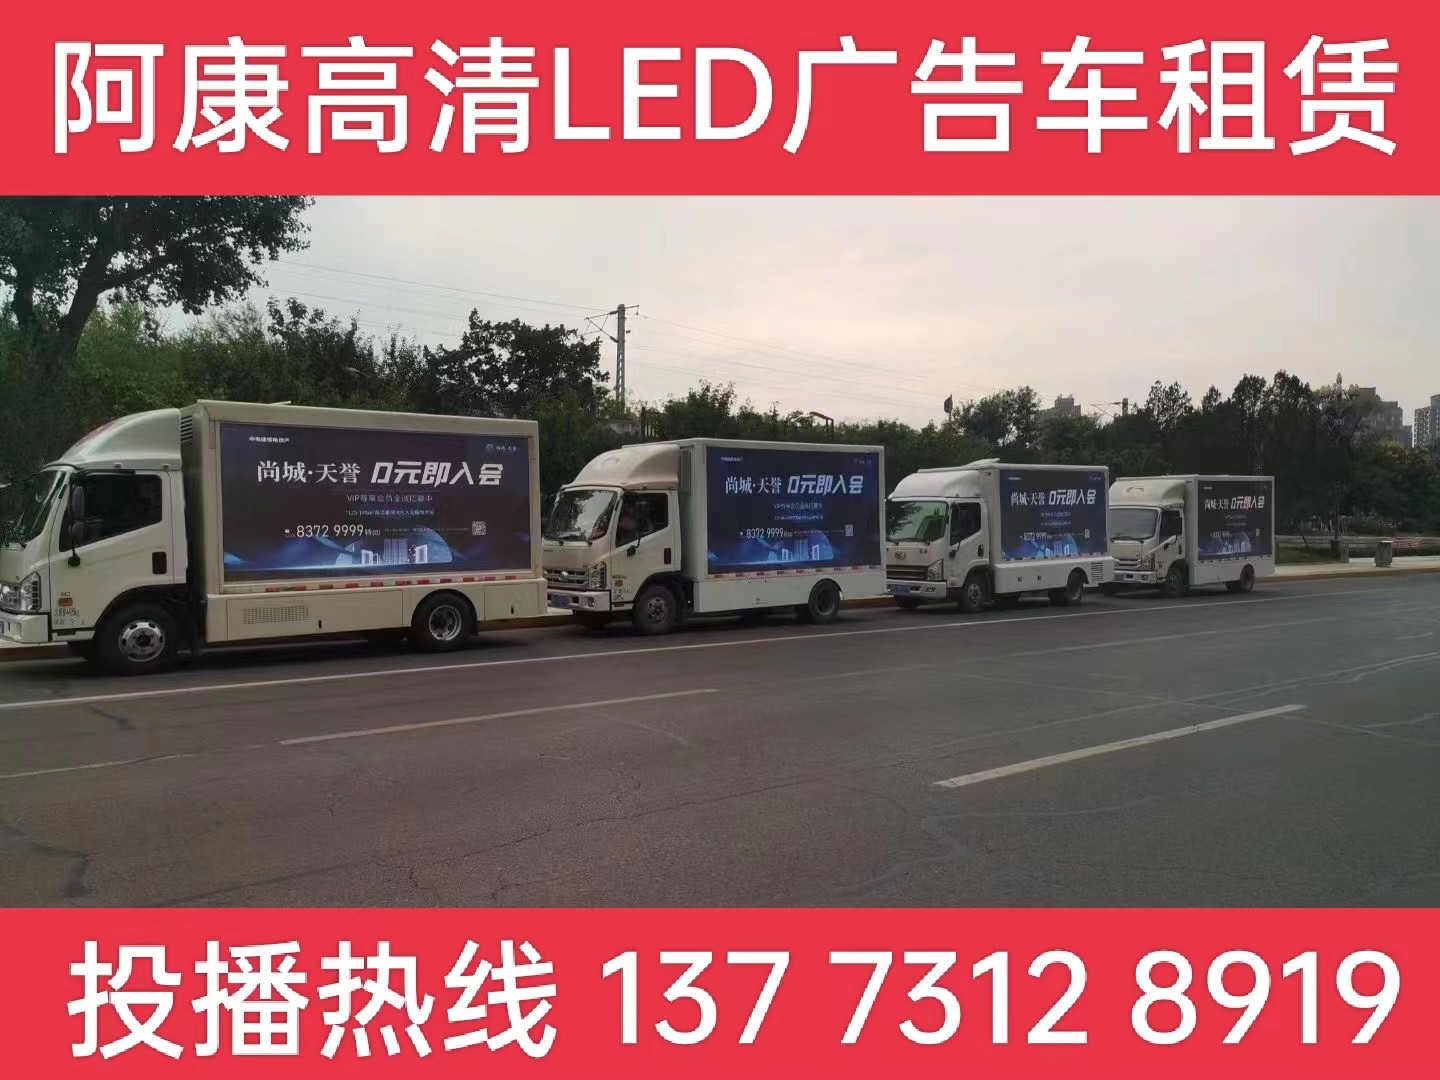 德清县LED广告车出租-某房产公司效果展示